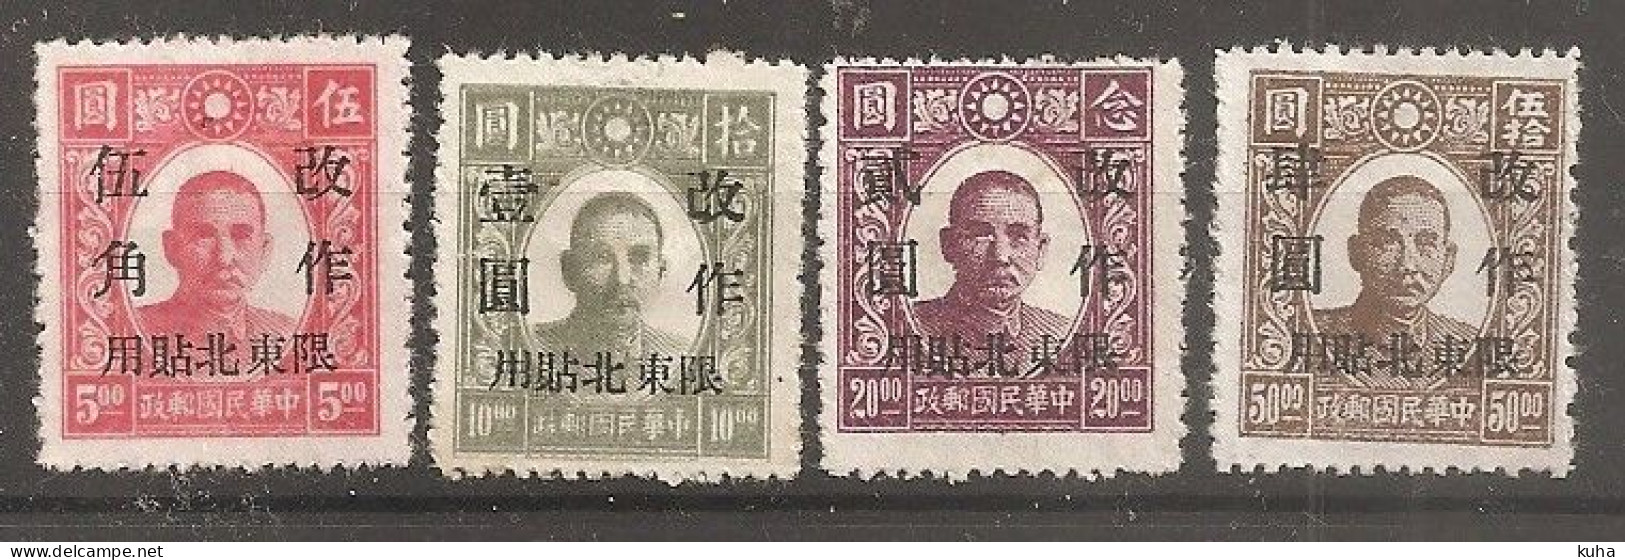 China Chine 1947 North Est China   MvLH - Chine Du Nord 1949-50